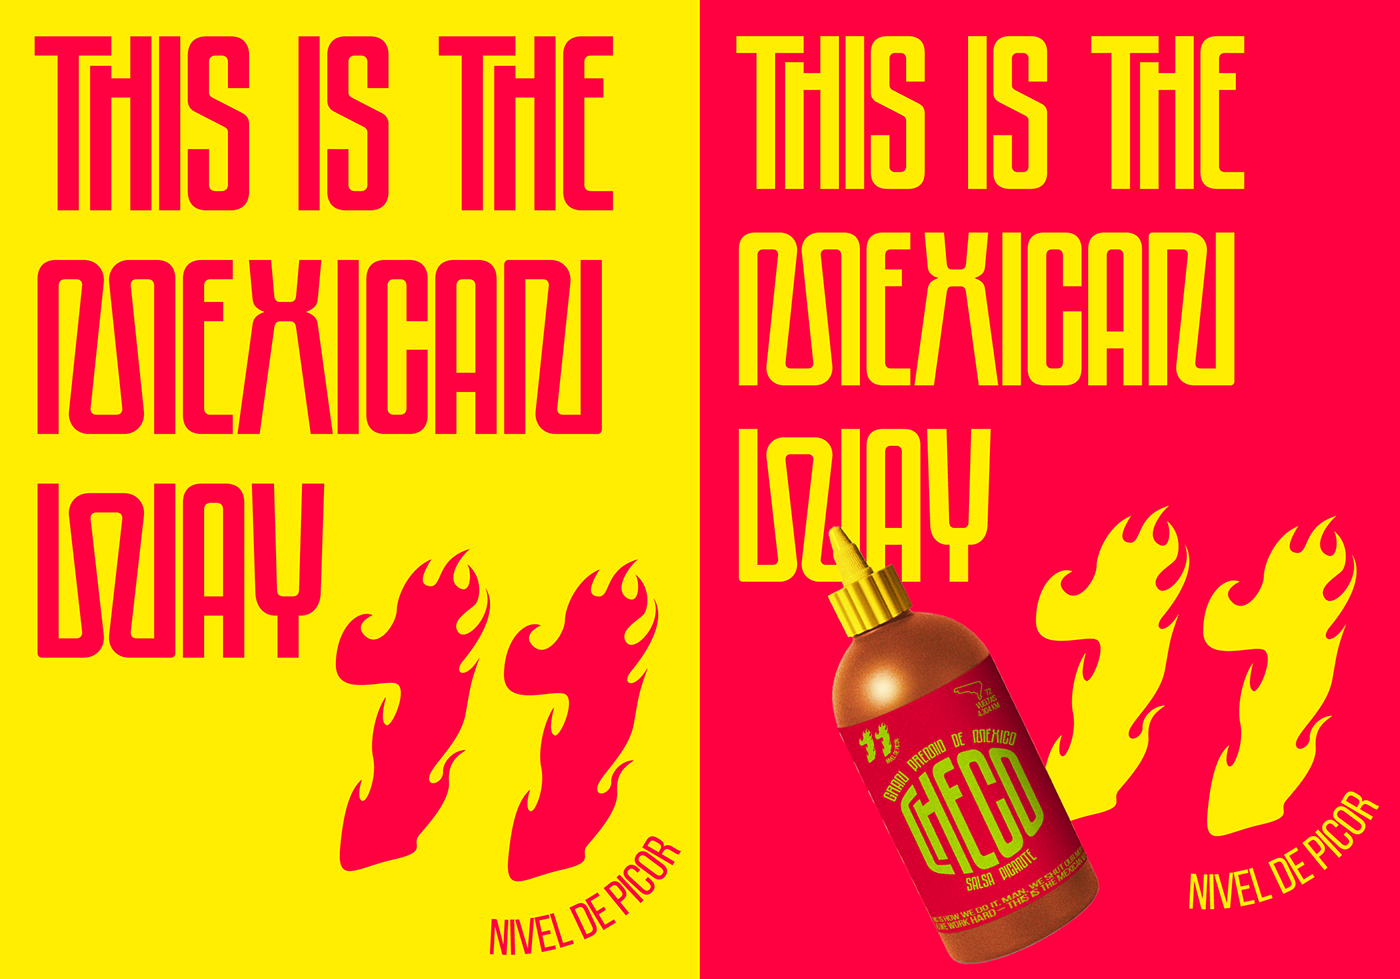 branding  design checo perez Formula 1 poster billboard fire Tacos mexico identity